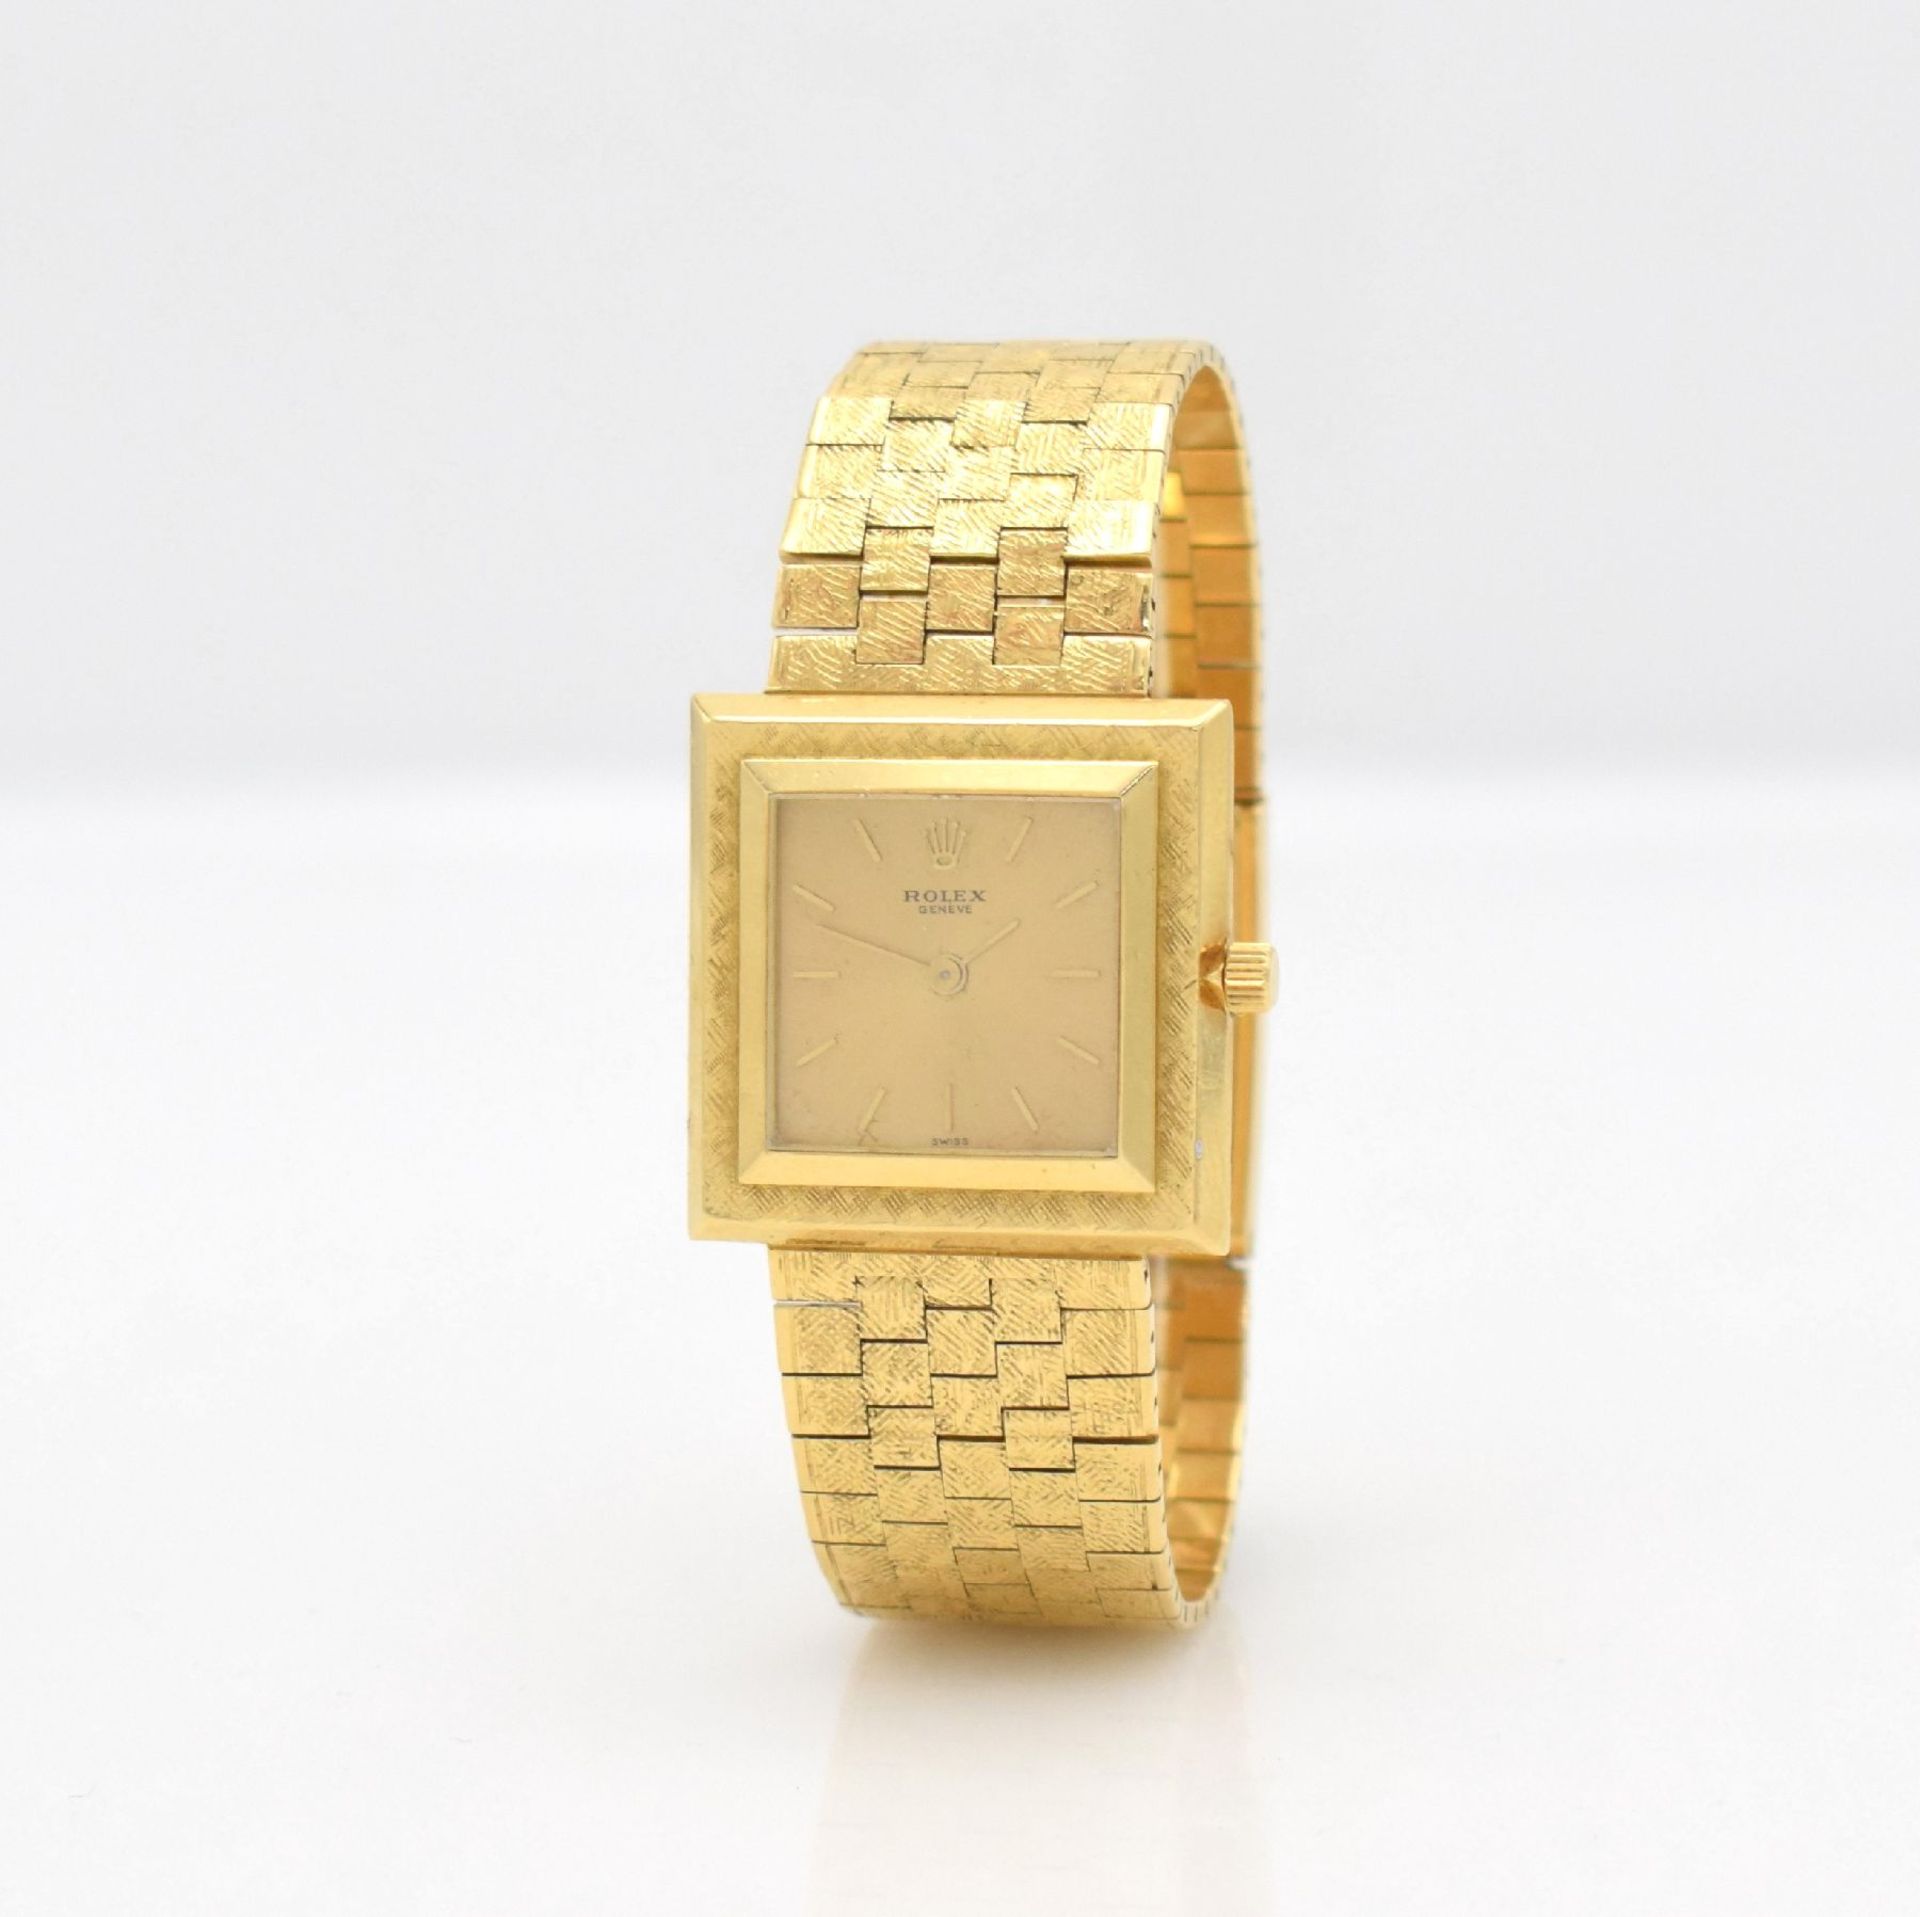 ROLEX Armbanduhr in GG 750/000 Referenz 9878, Schweiz um - Bild 3 aus 9